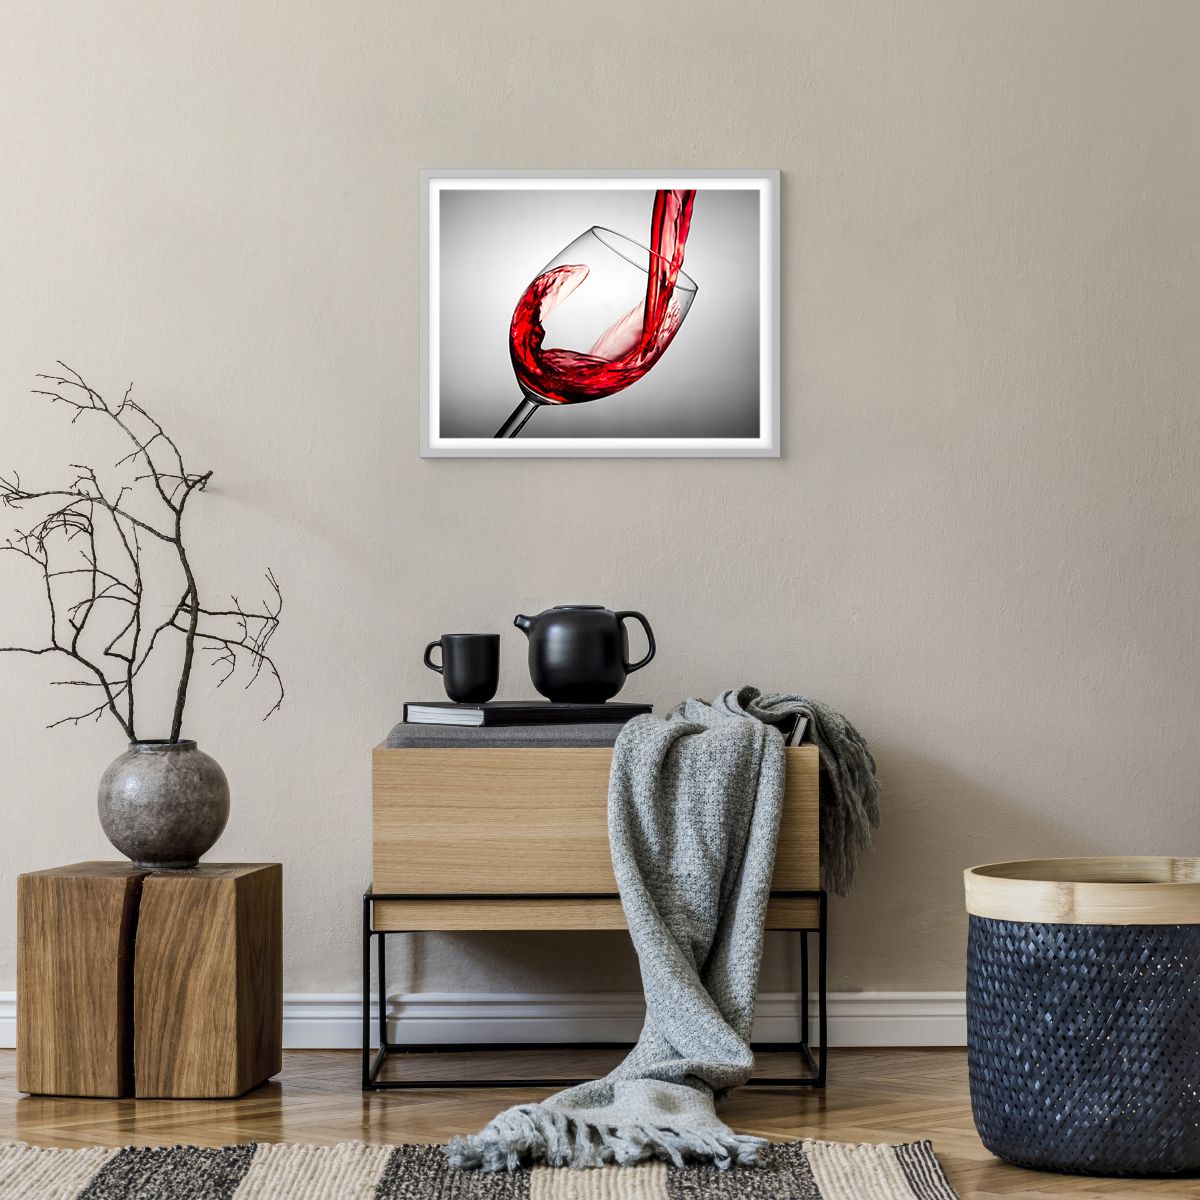 Poster in einem weißen Rahmen Weinglas, Poster in einem weißen Rahmen Rotwein, Poster in einem weißen Rahmen Gastronomie, Poster in einem weißen Rahmen Spiel, Poster in einem weißen Rahmen Toast